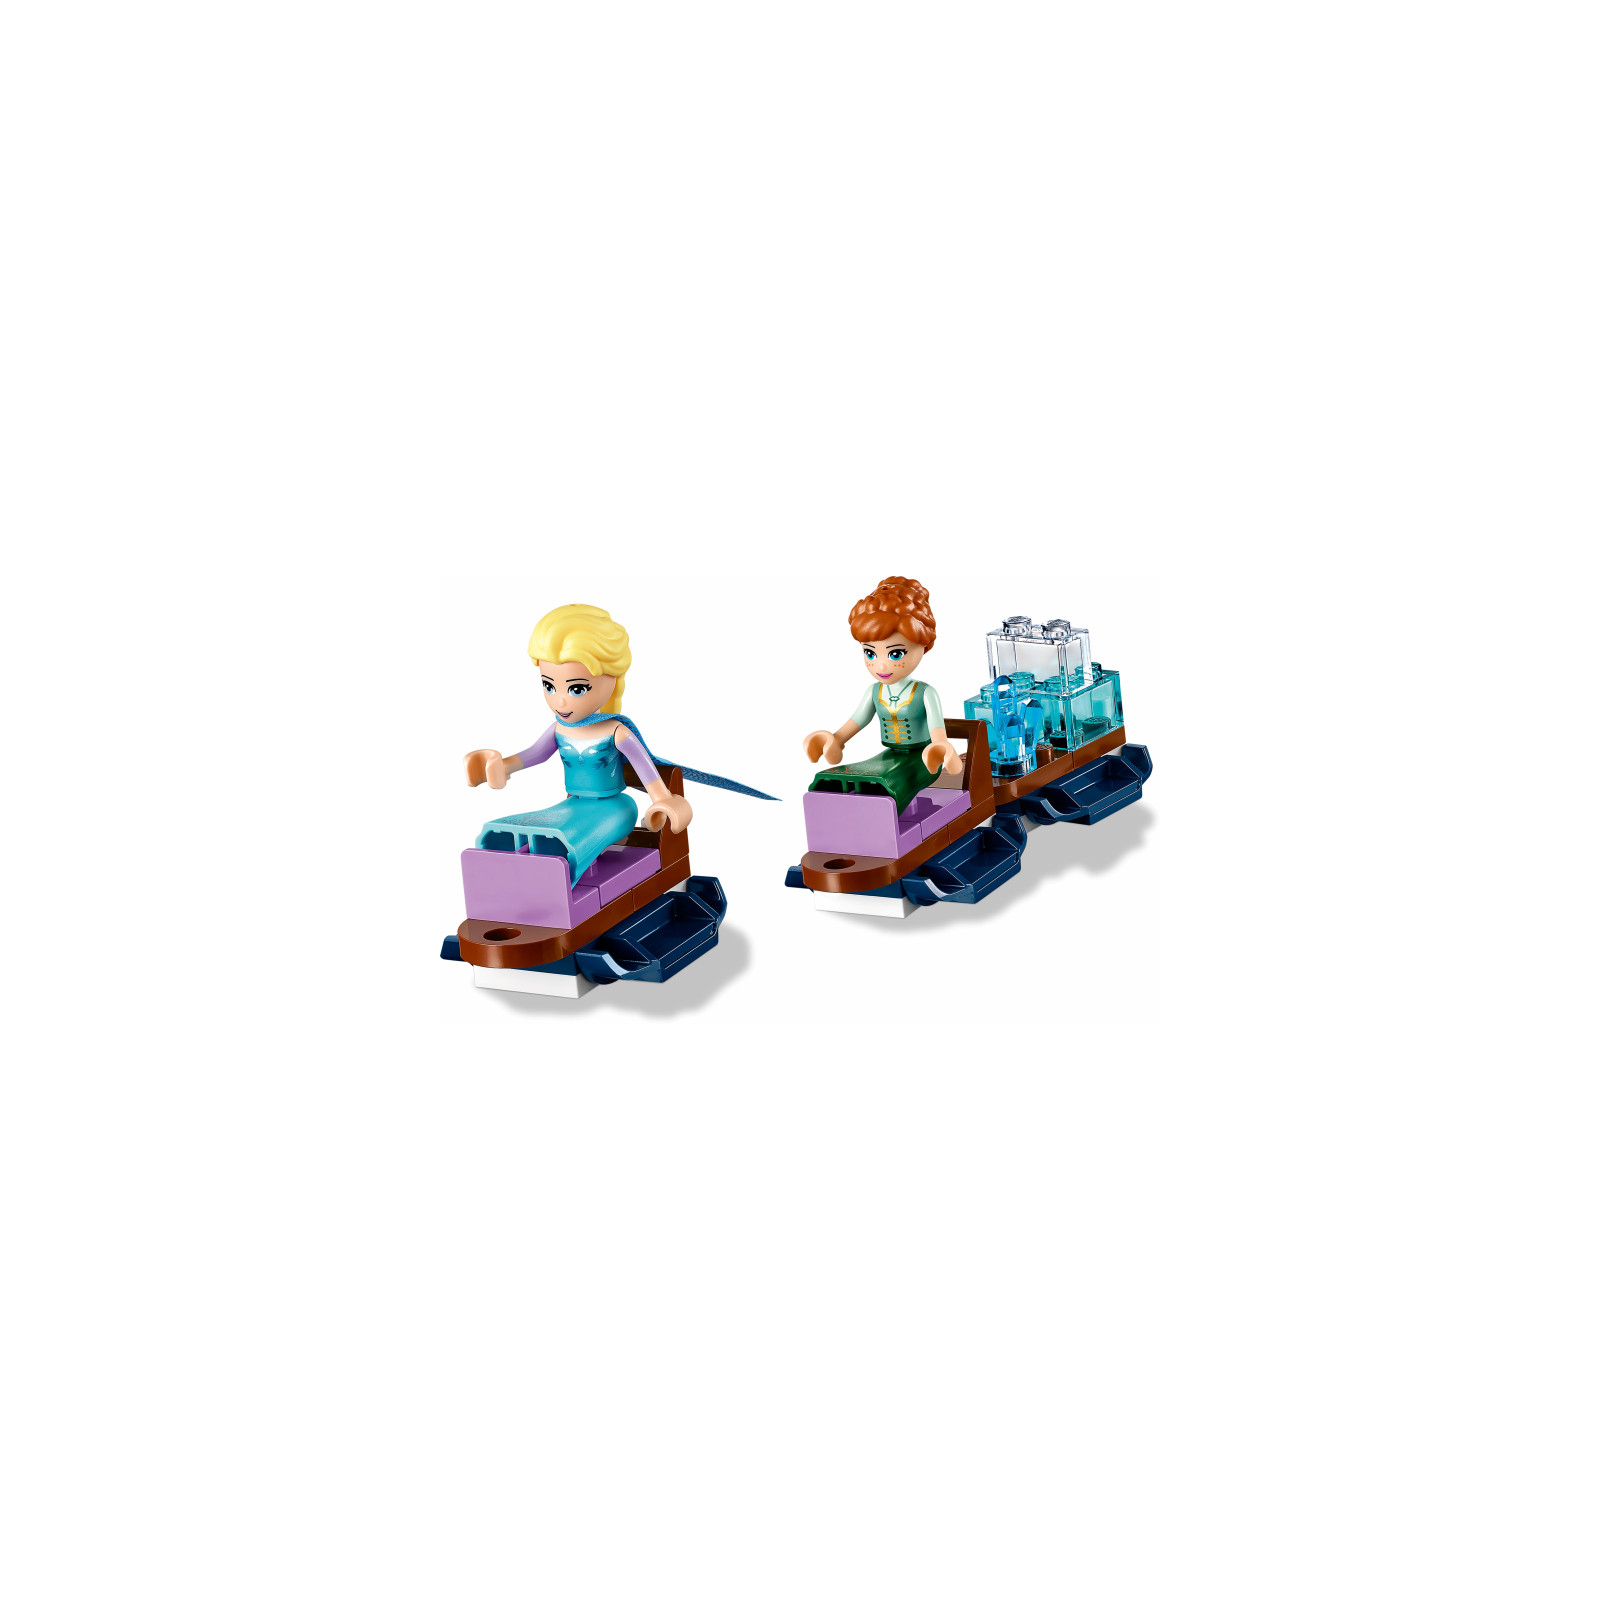 Конструктор LEGO Disney Princess Frozen 2 Волшебный ледяной замок Эльзы 701 д (43172) изображение 7